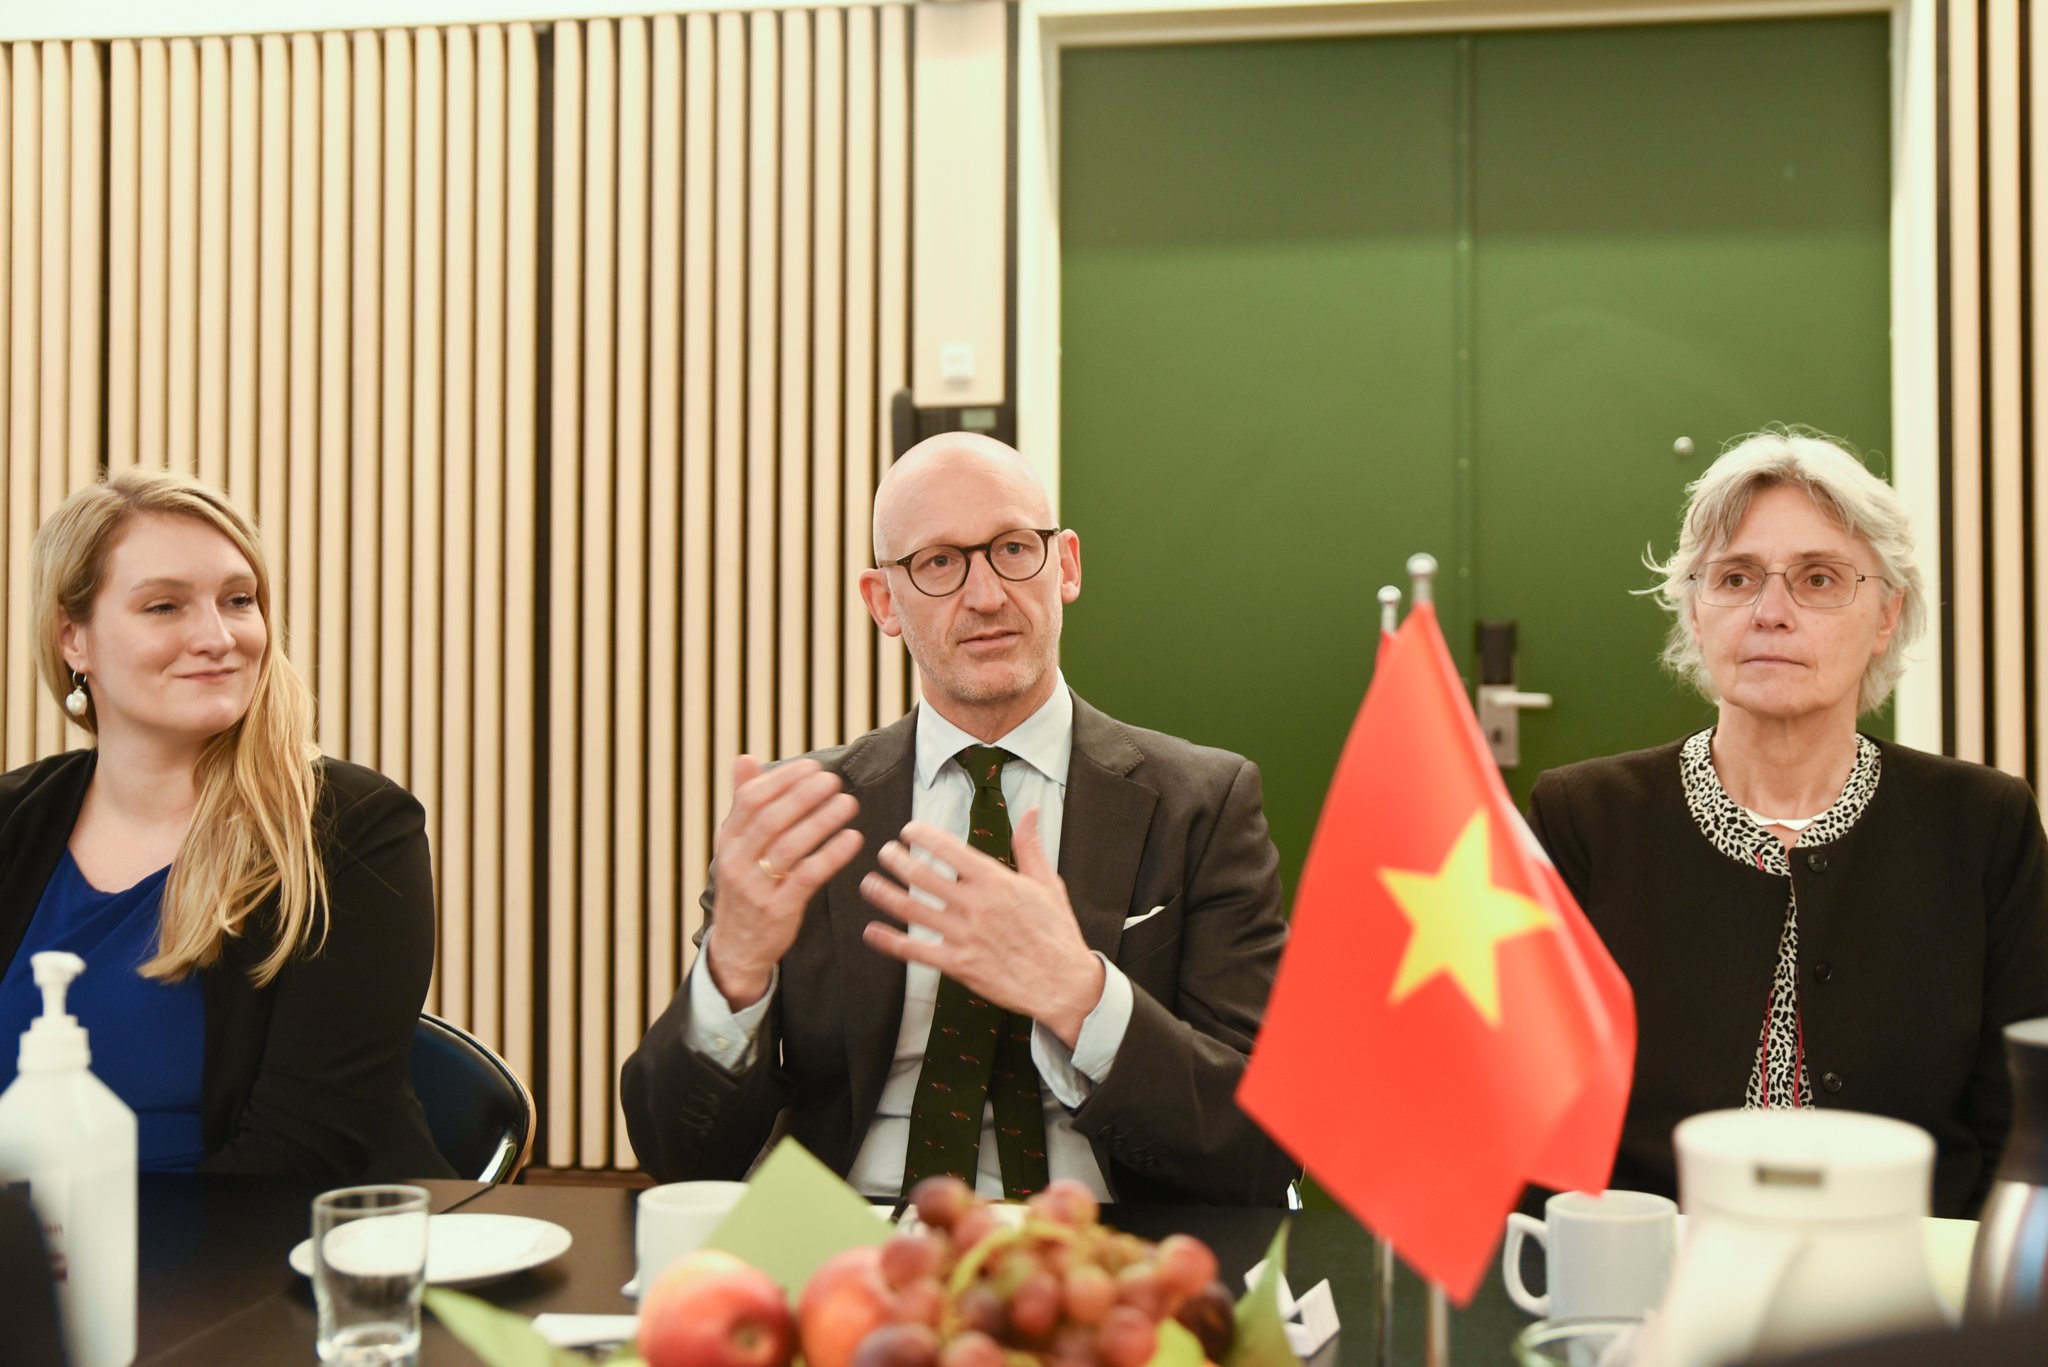 Ông Troels Vensild, Giám đốc Trung tâm Hợp tác quốc tế của Tổng cục Quản lý Thực phẩm và Thú y chia sẻ về mục tiêu tương lai xanh của Đan Mạch. Ảnh: Lan Trần.